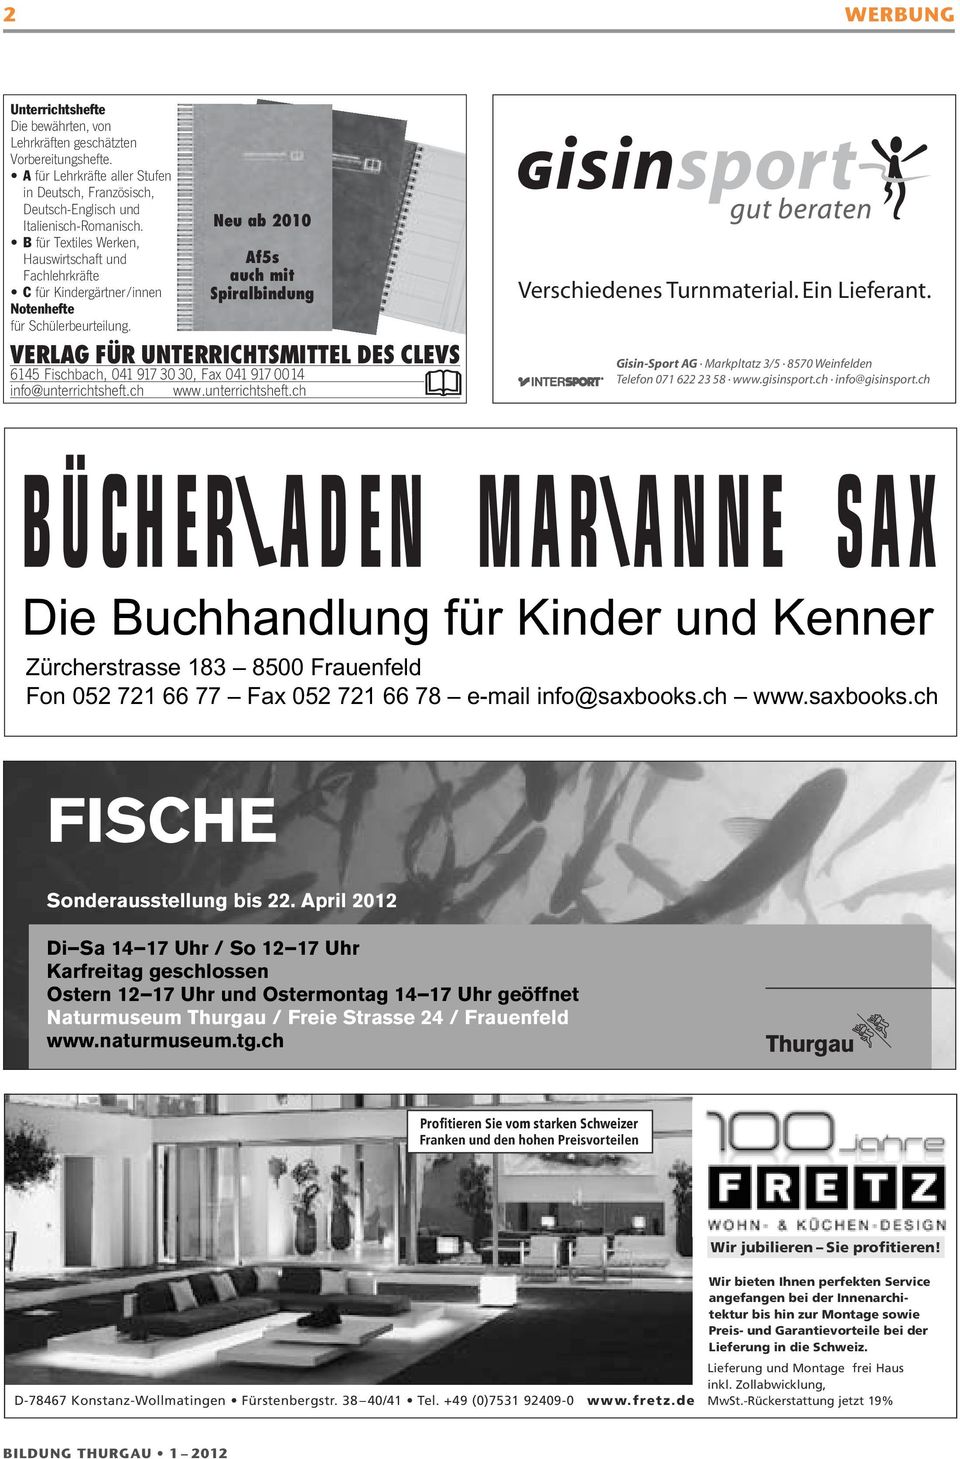 Bildung Thurgau Zeitschrift Der Berufsorganisation Der Lehrerinnen Und Lehrer Des Kantons Thurgau Pdf Kostenfreier Download